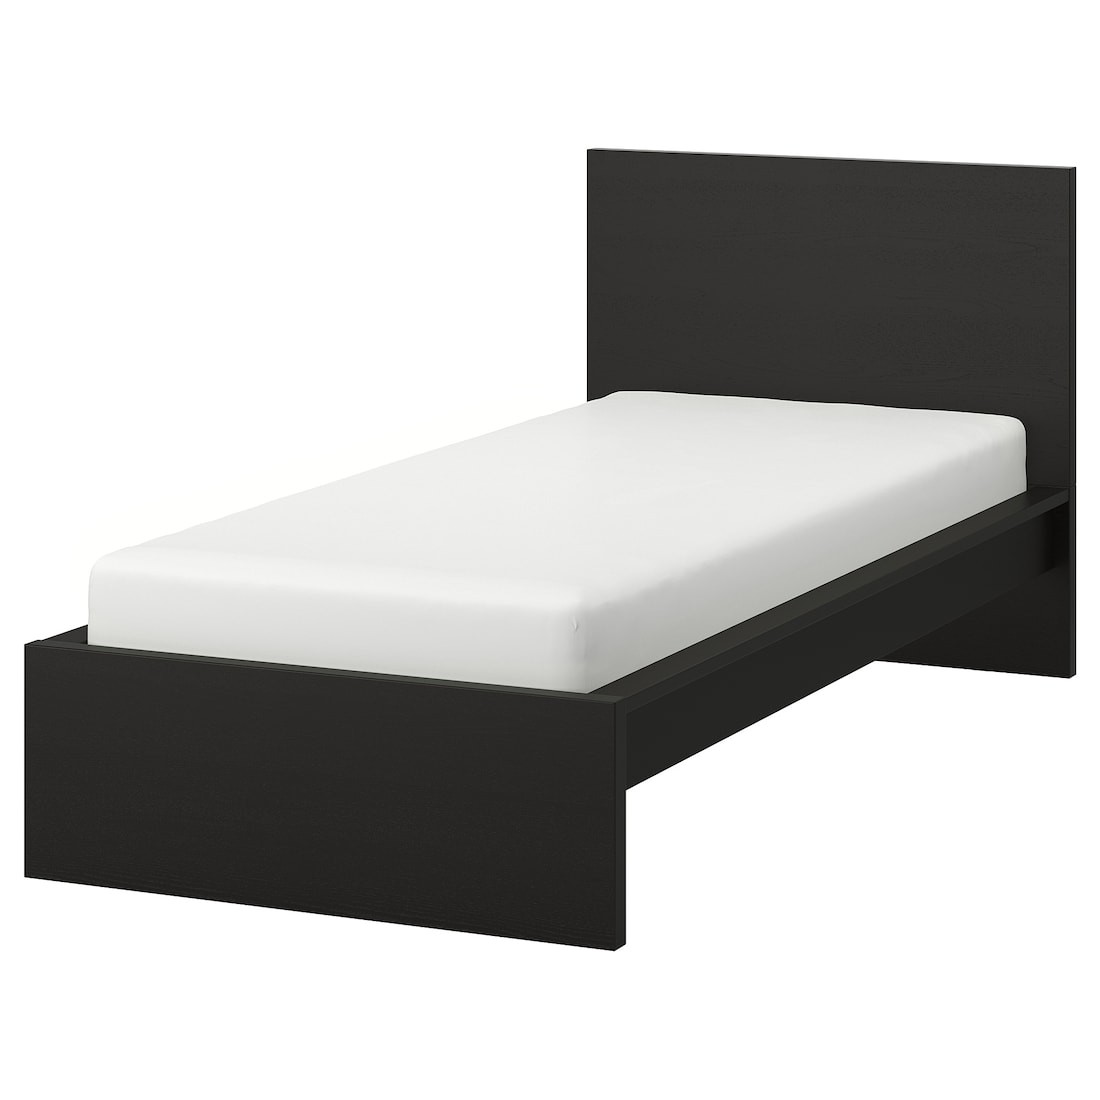 MALM МАЛЬМ Кровать односпальная, высокий, черно-коричневый / Lindbåden, 90x200 см